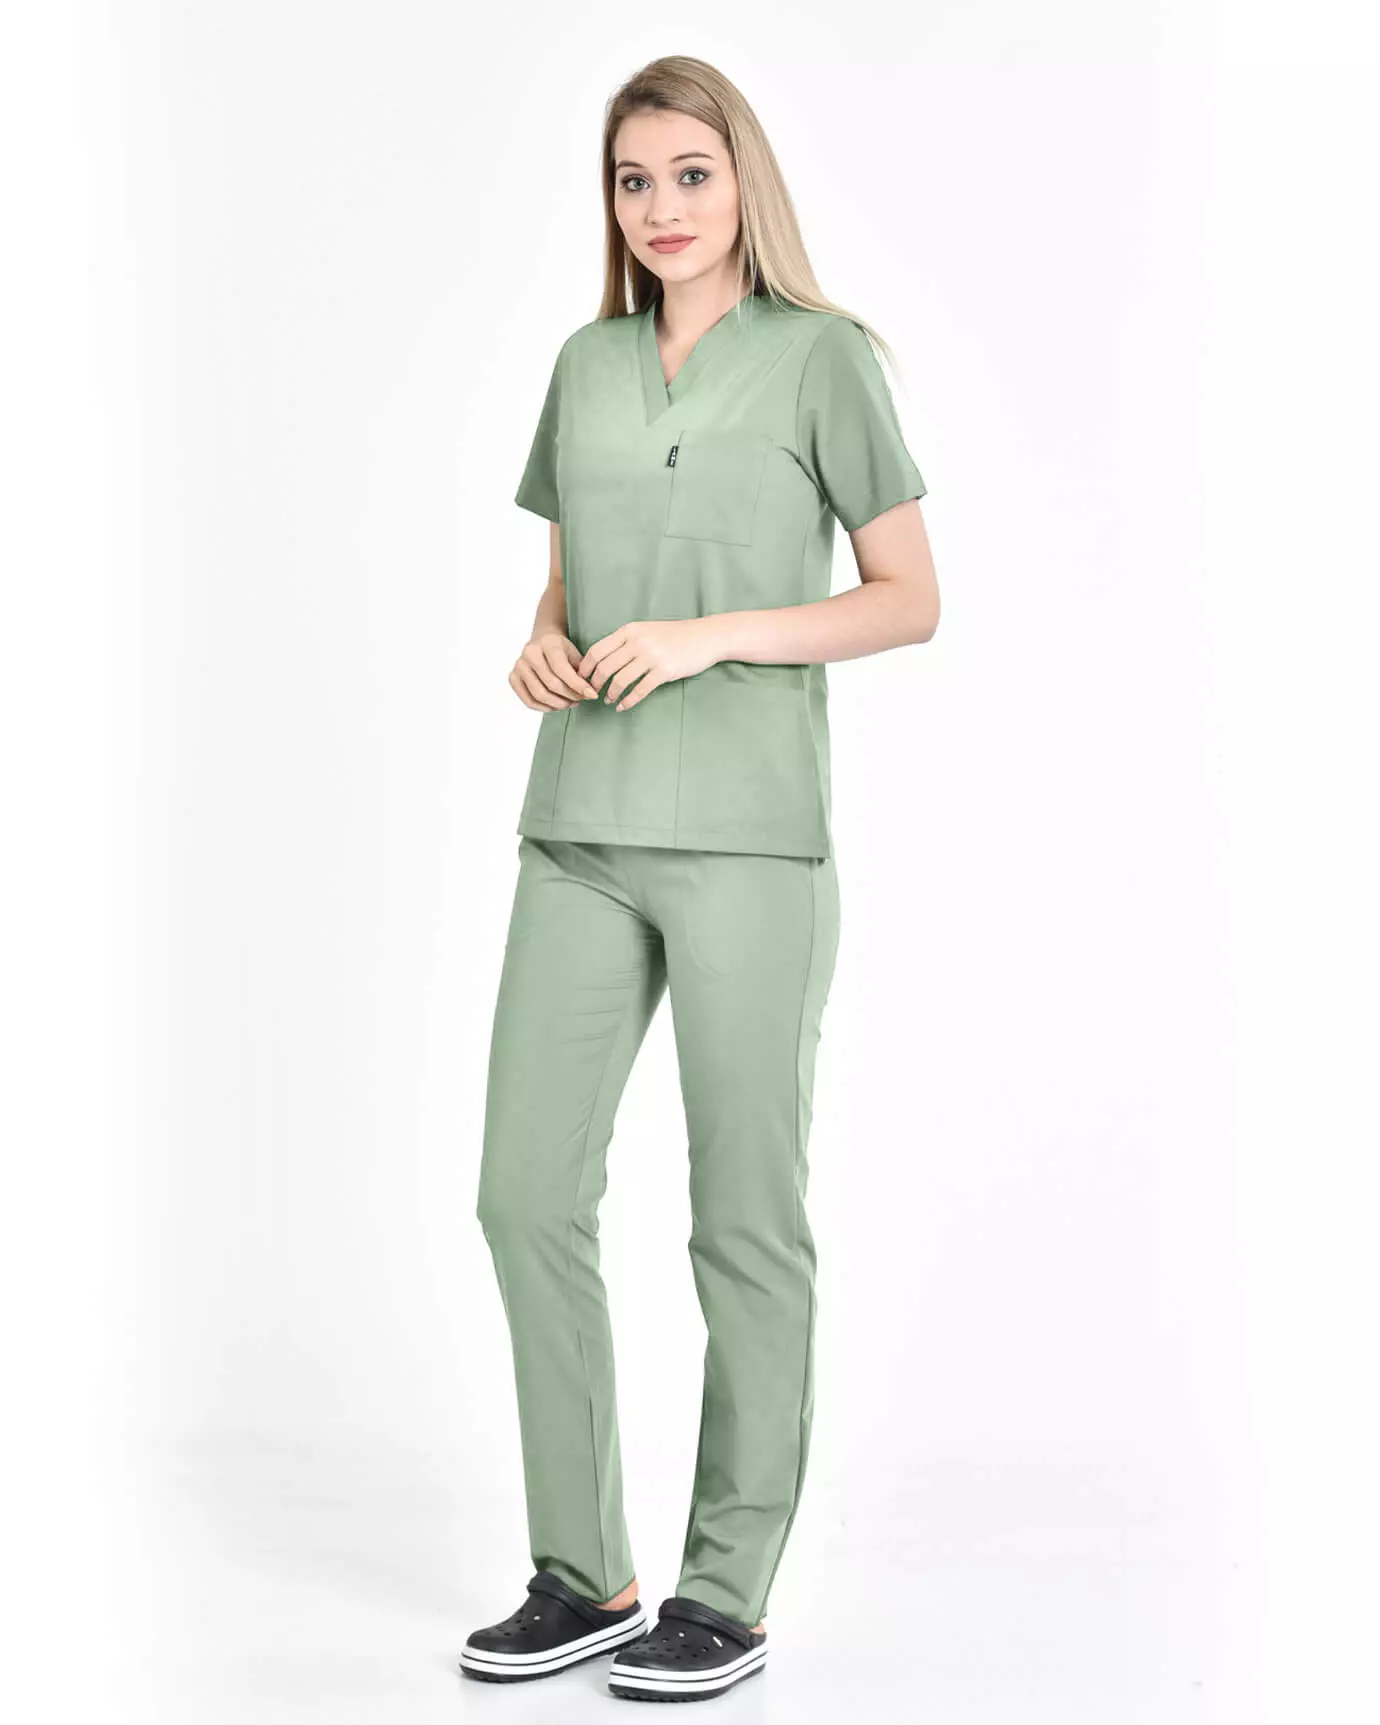 Kadın Hemşire Forması Premium Mint Yeşili Takım Yarasa Kol